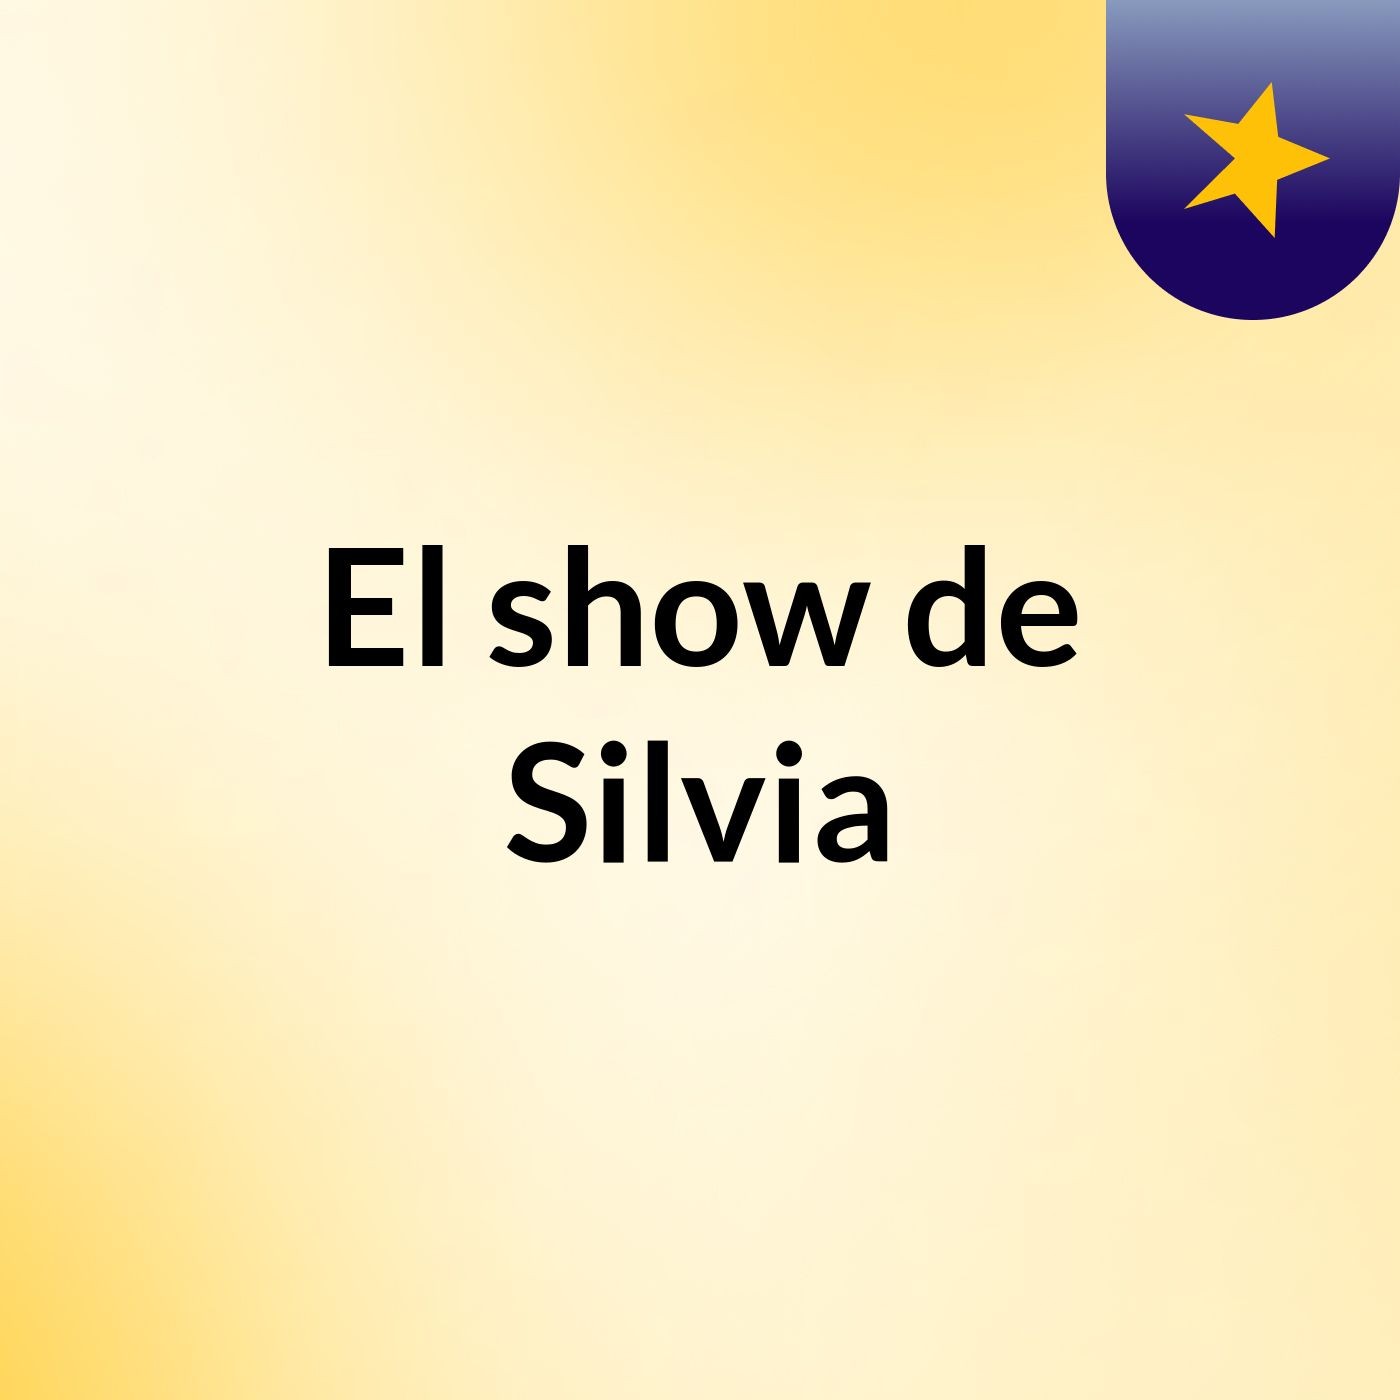 El show de Silvia